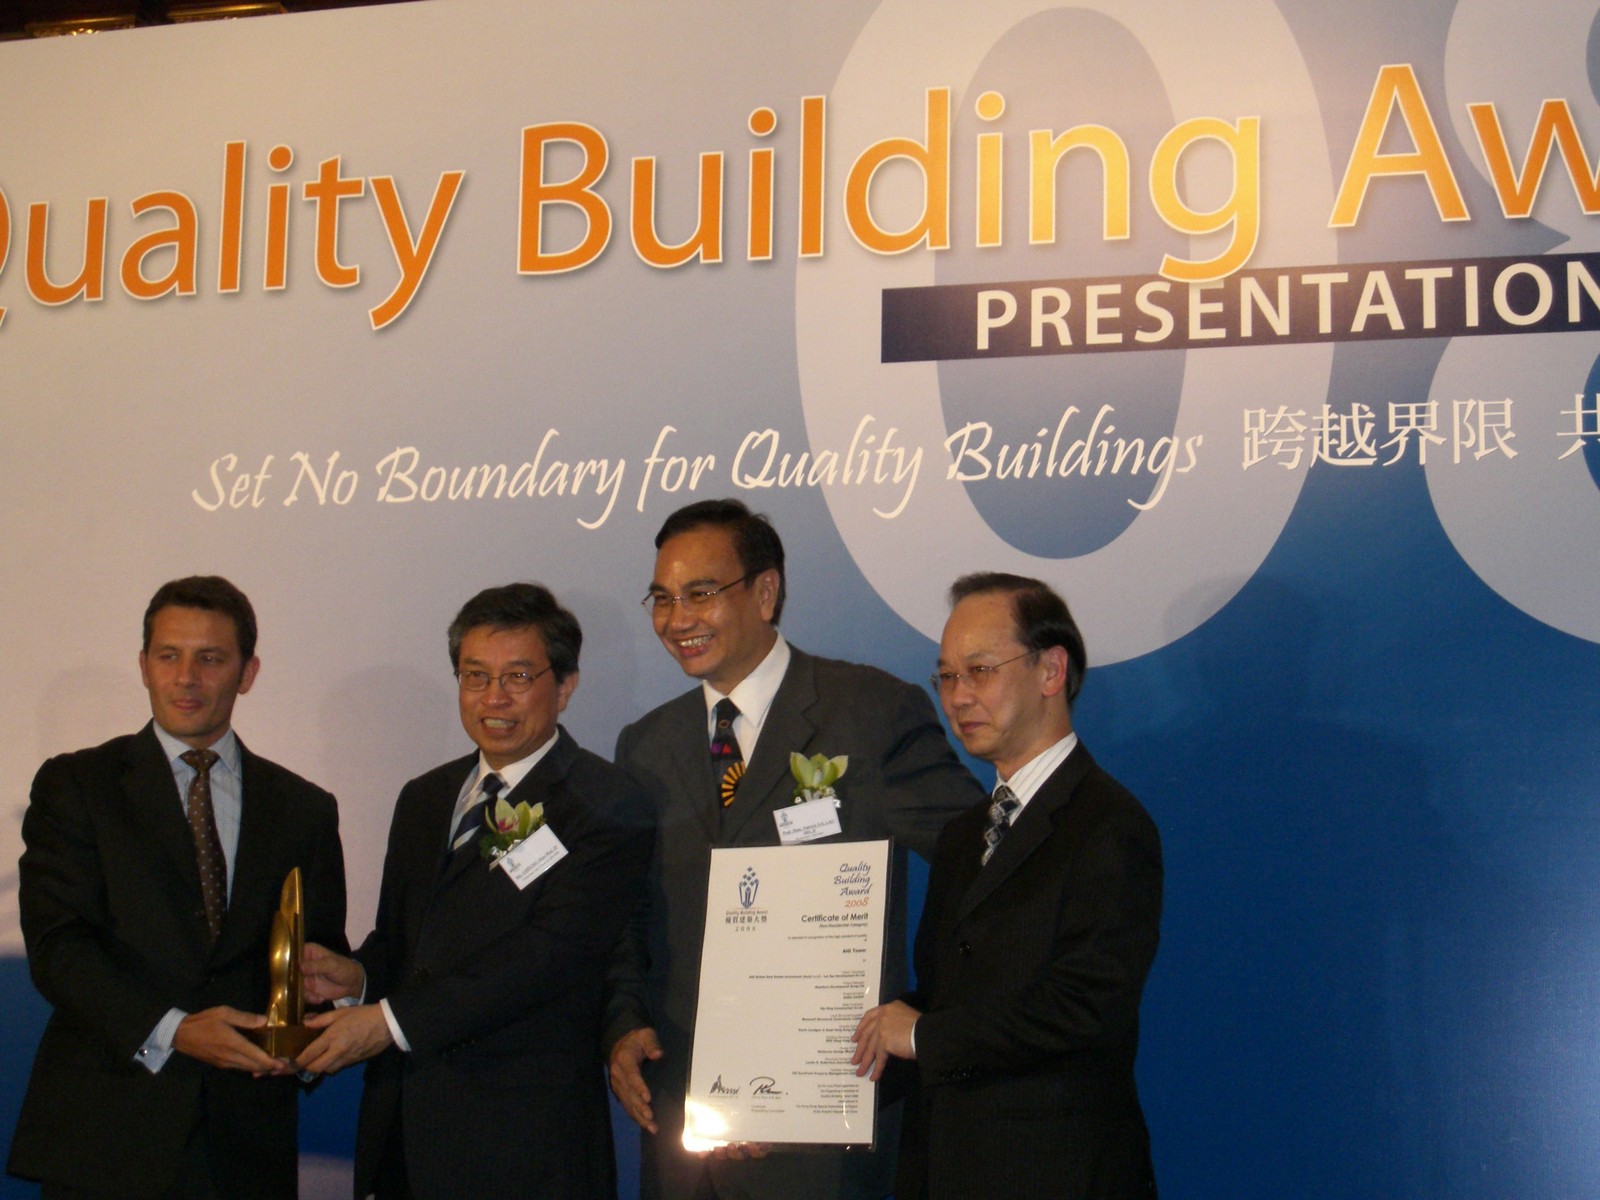 協興建築董事總經理唐玉麟博士(右一)代表公司授領獎項